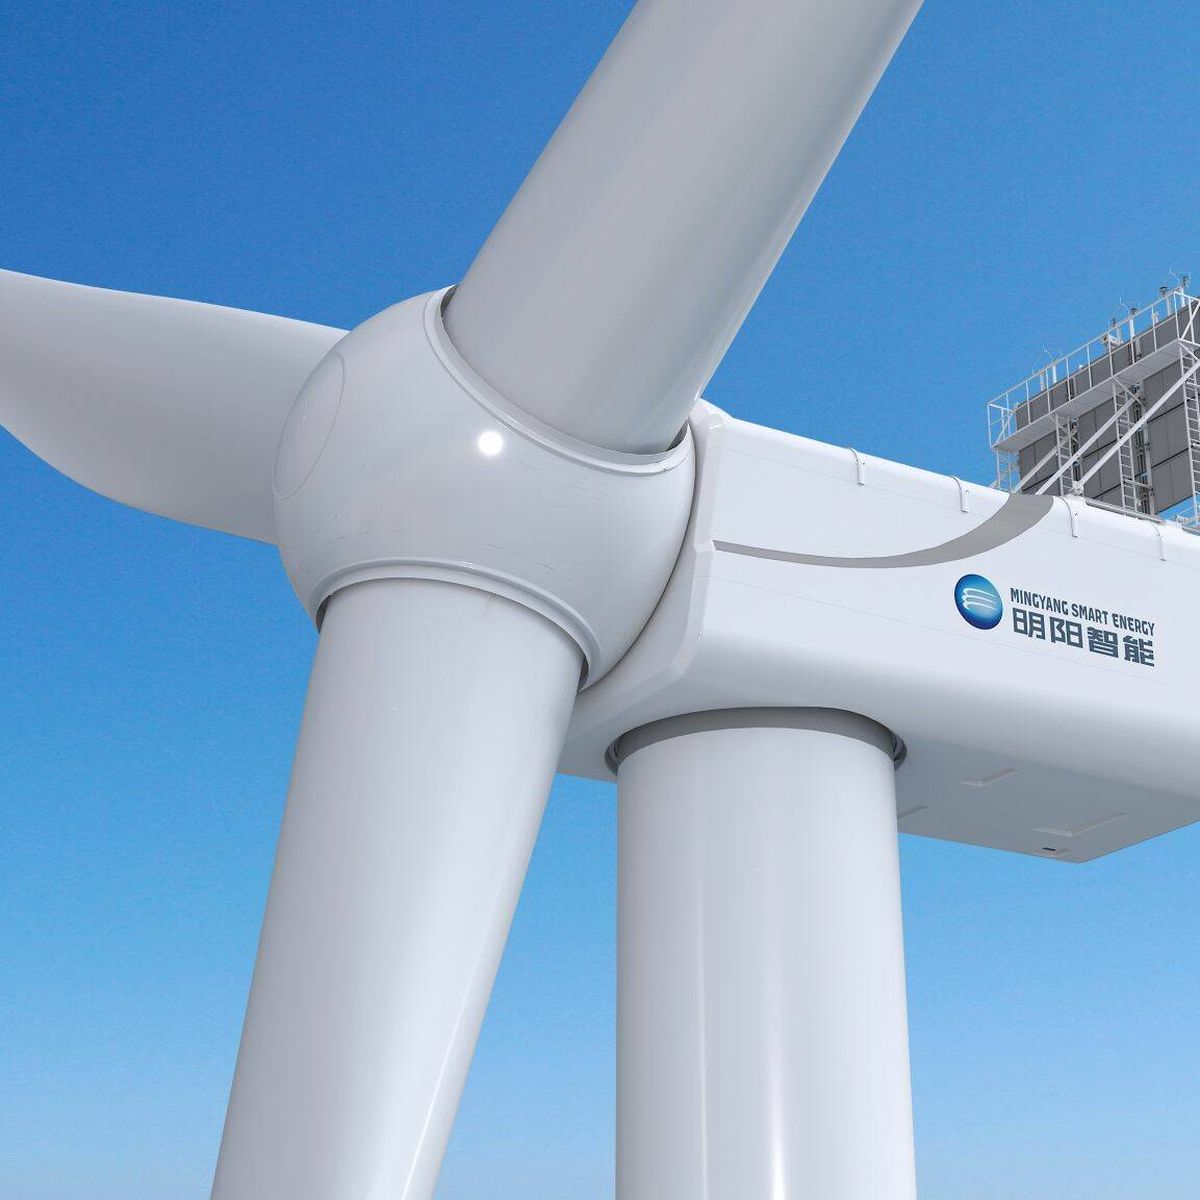 199 metros medirá la turbina eólica terrestre más alta del mundo